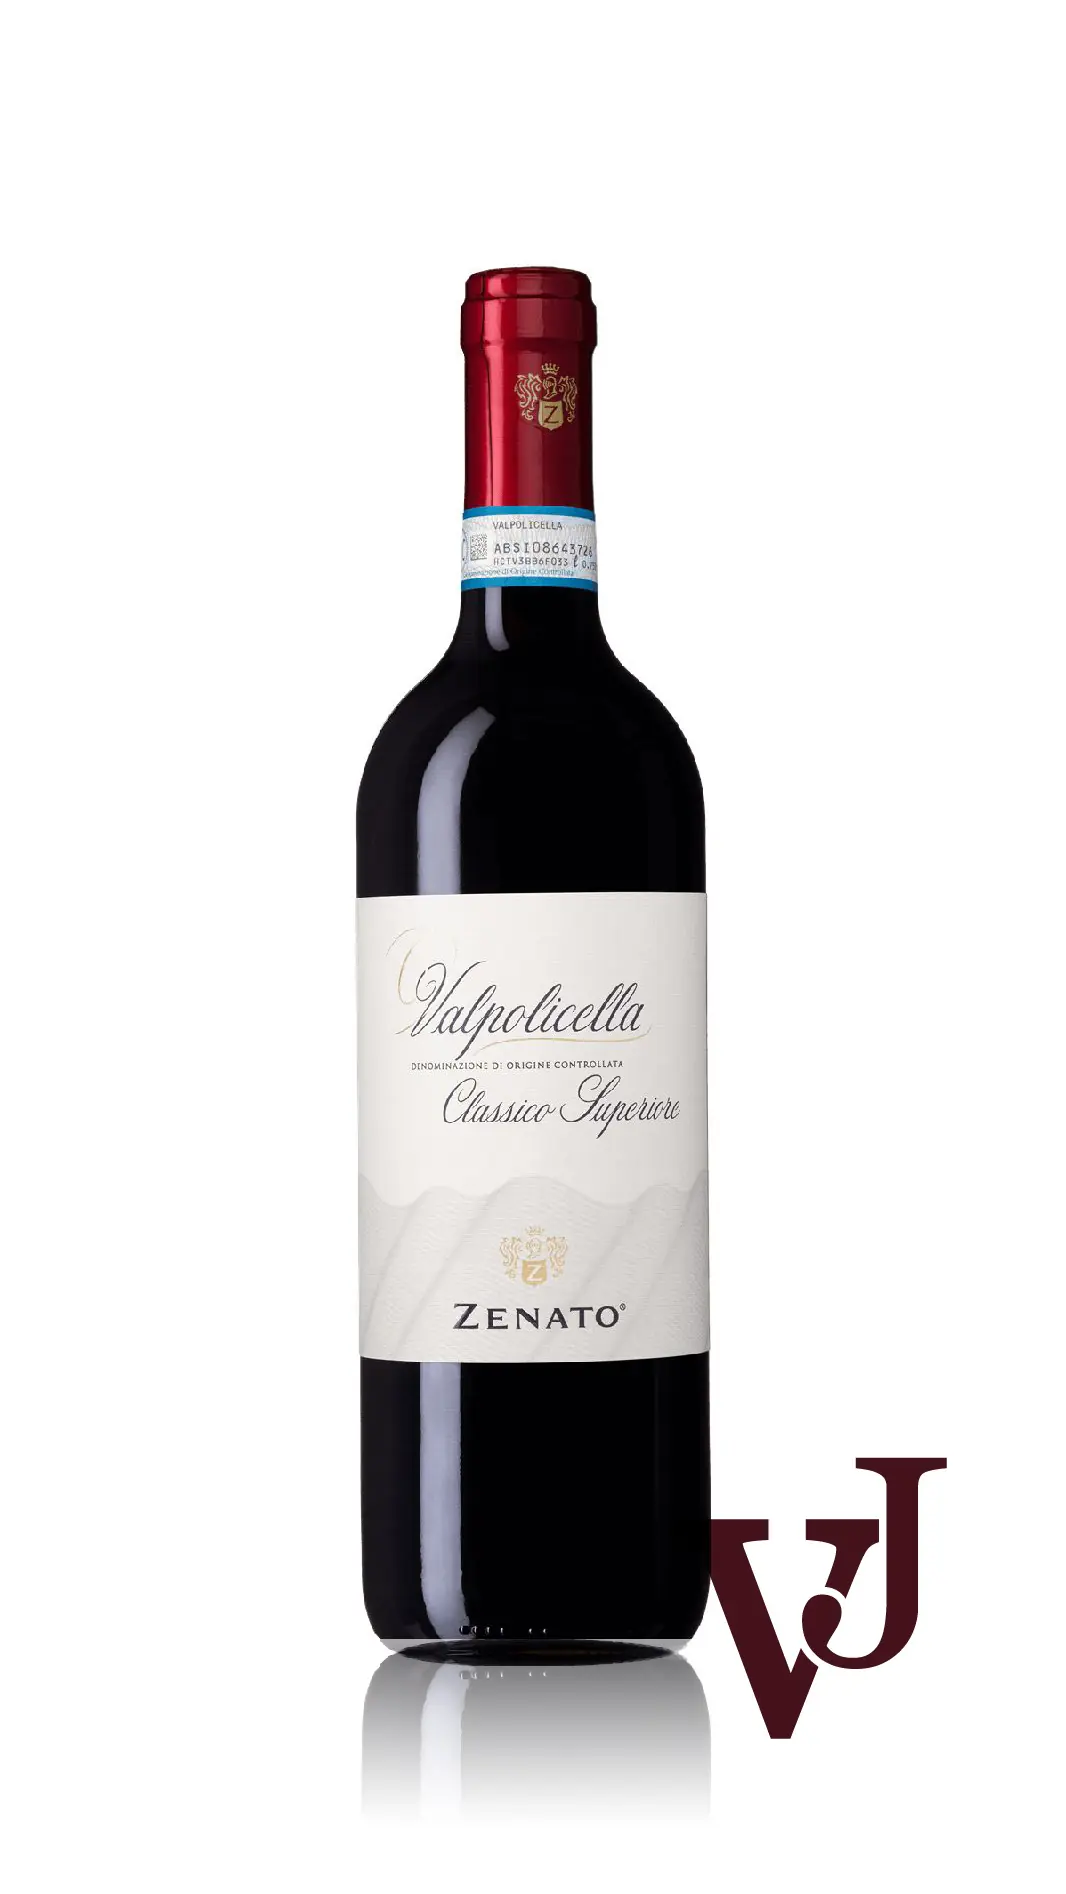 Rött Vin - Zenato Valpolicella Classico Superiore artikel nummer 1238501 från producenten Zenato från området Italien - Vinjournalen.se